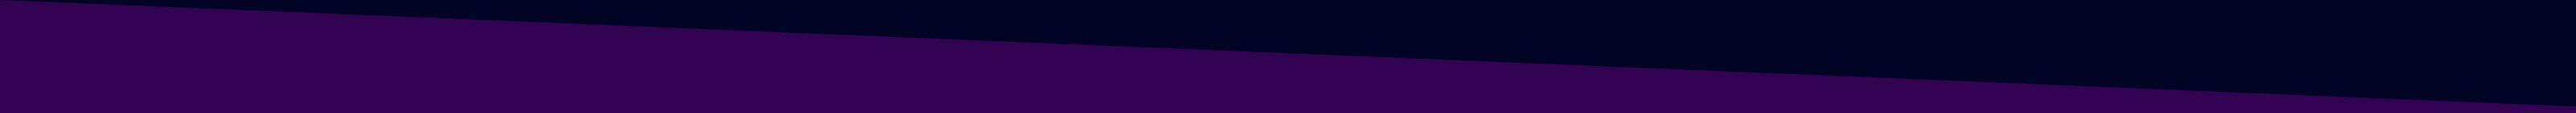 Dark blue to purple page divider